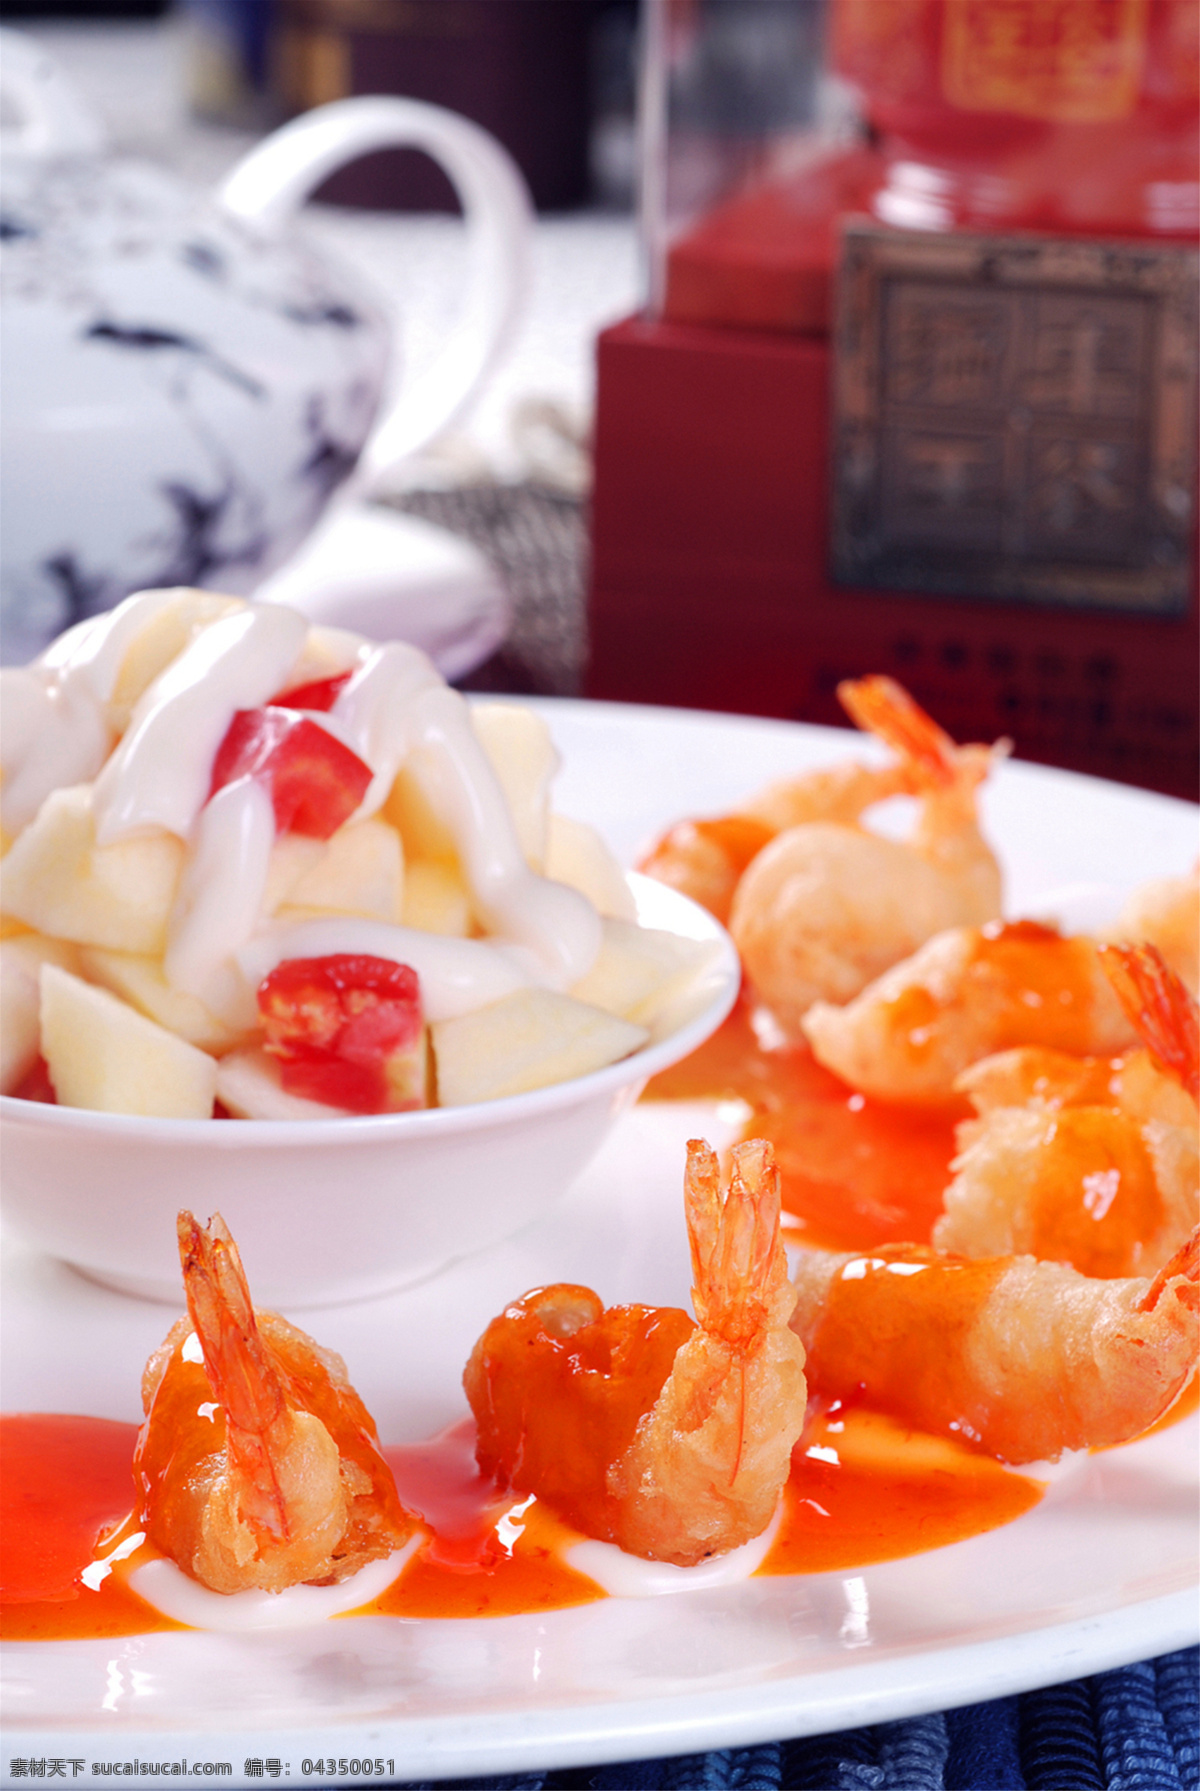 泰汁凤尾虾 美食 传统美食 餐饮美食 高清菜谱用图